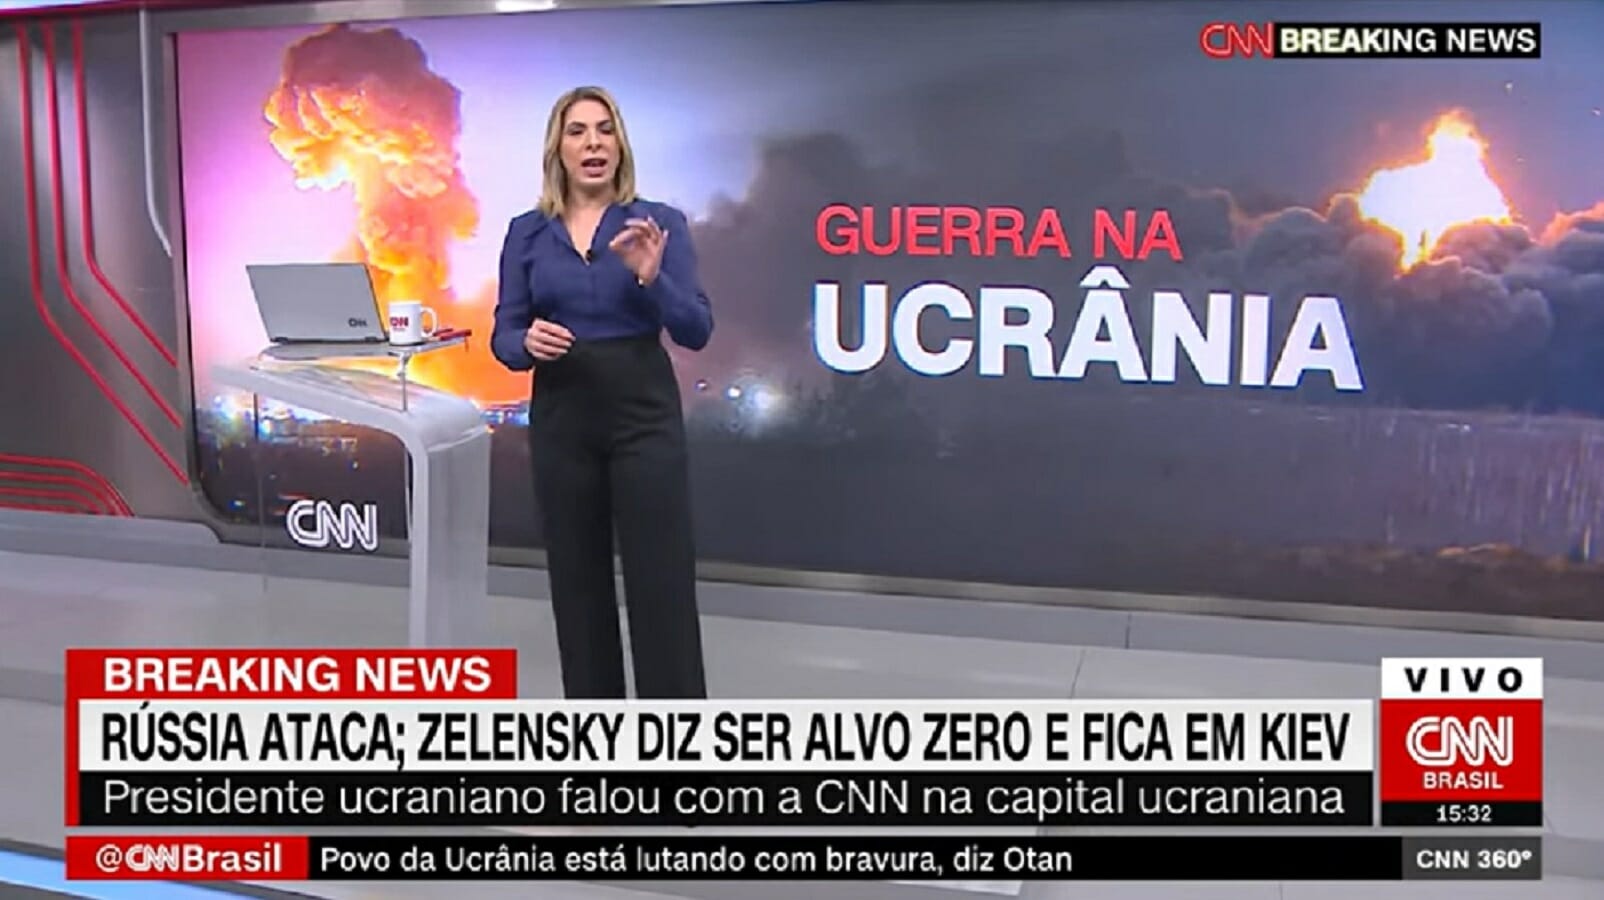 Daniela Lima, com seu 360º, leva CNN Brasil à liderança de audiência